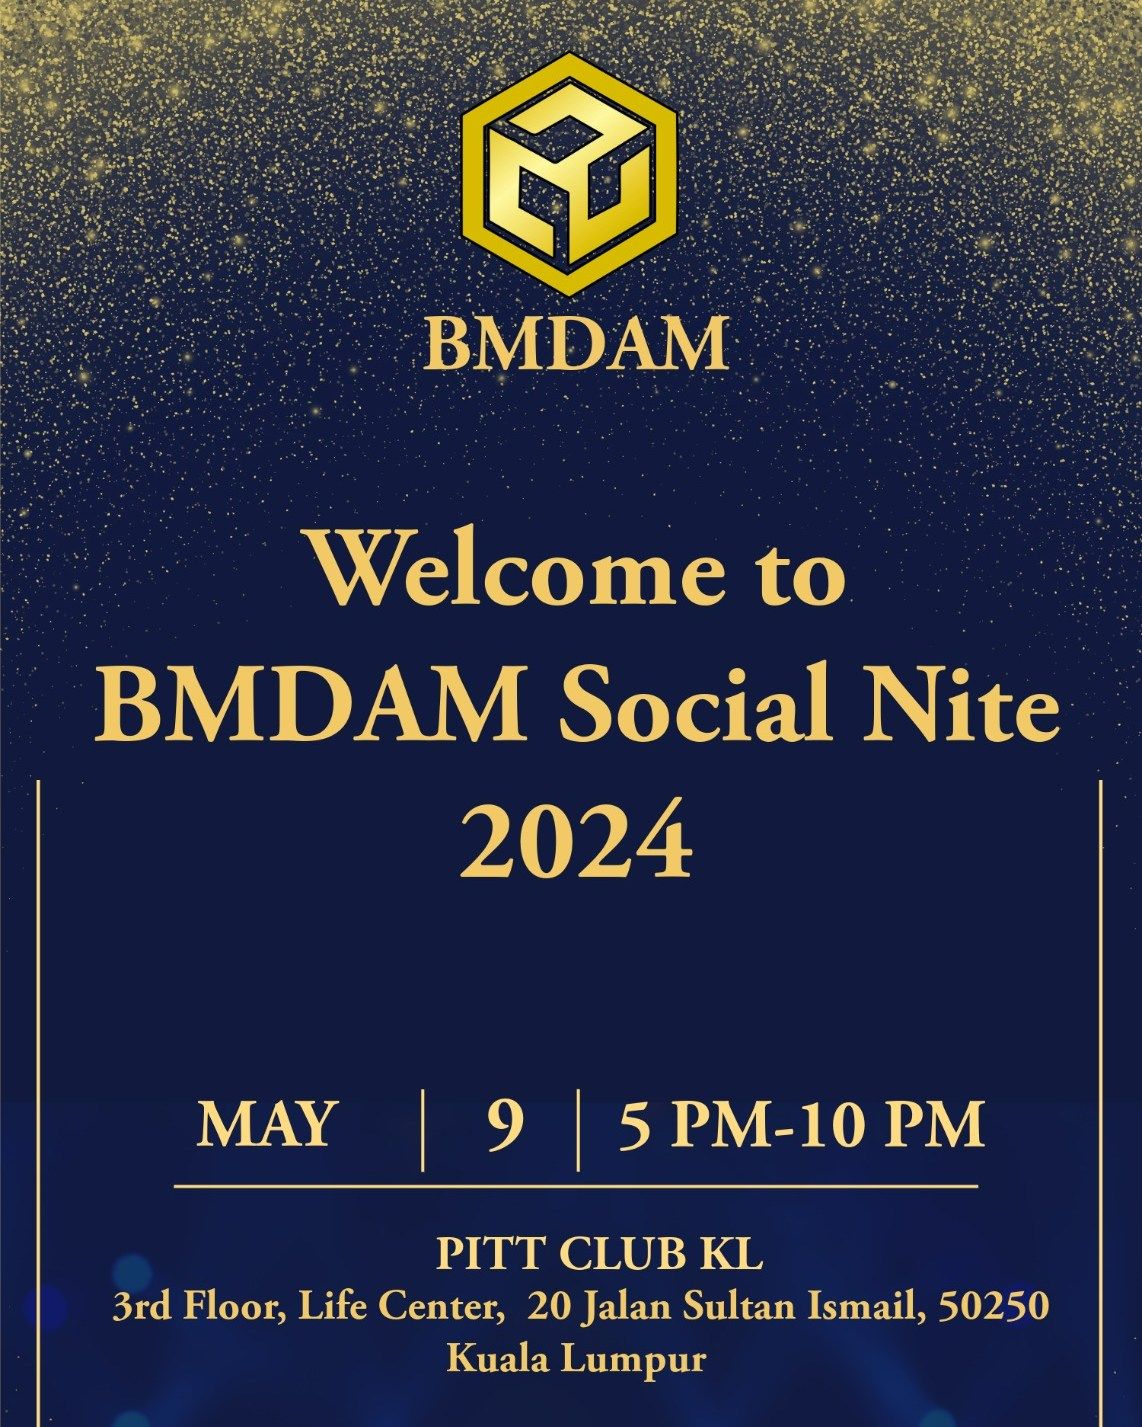 BMDAM Social Nite 2024